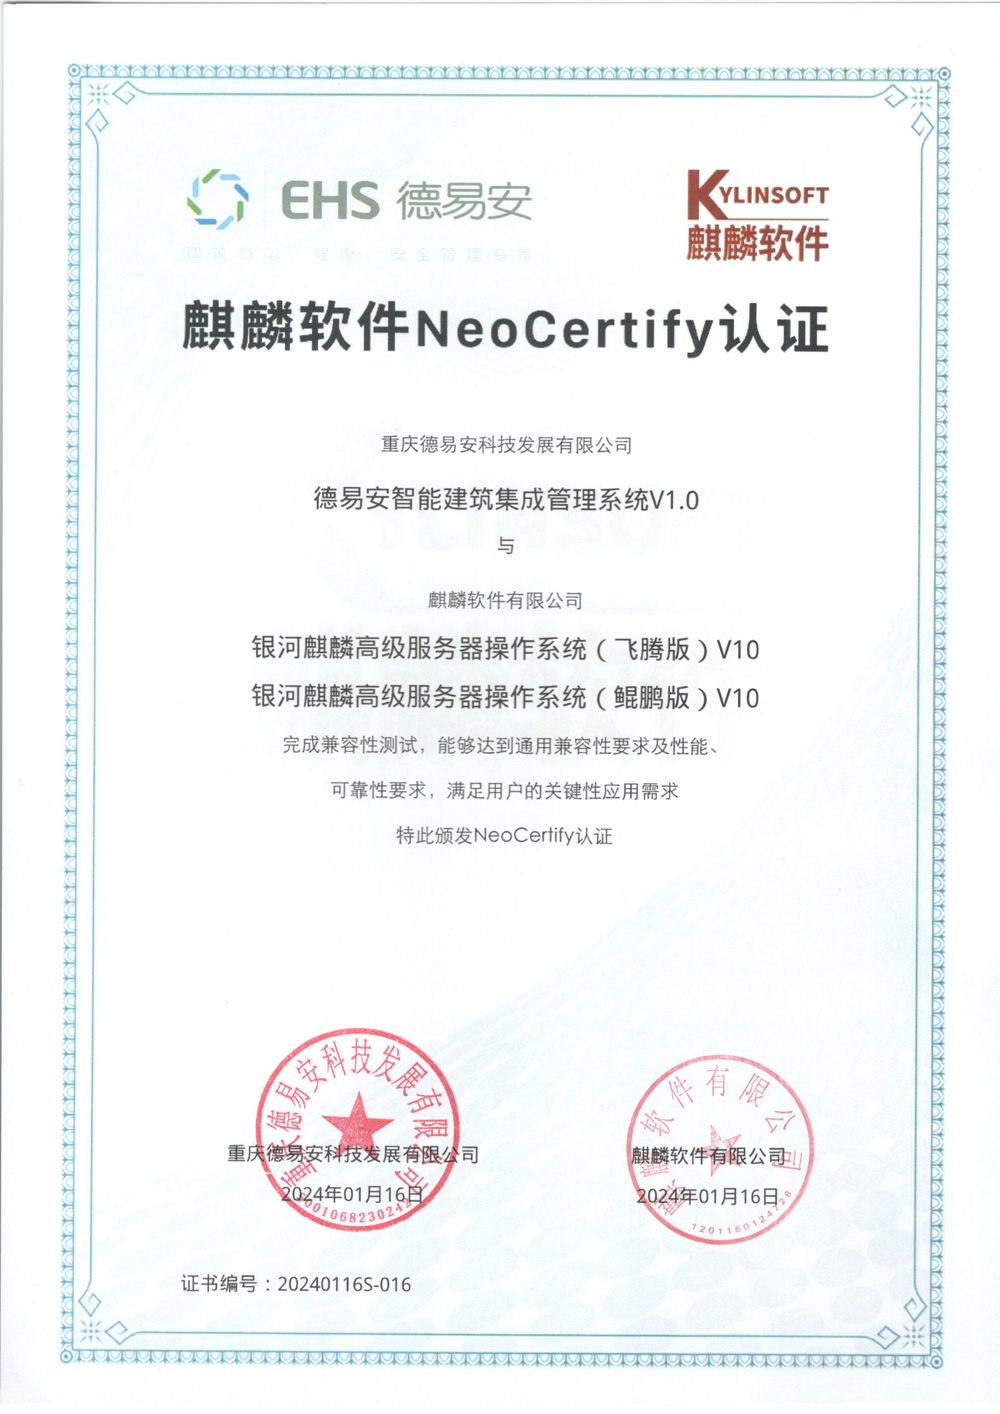 重庆6766澳门娱乐官网取得国防级系统安全认证